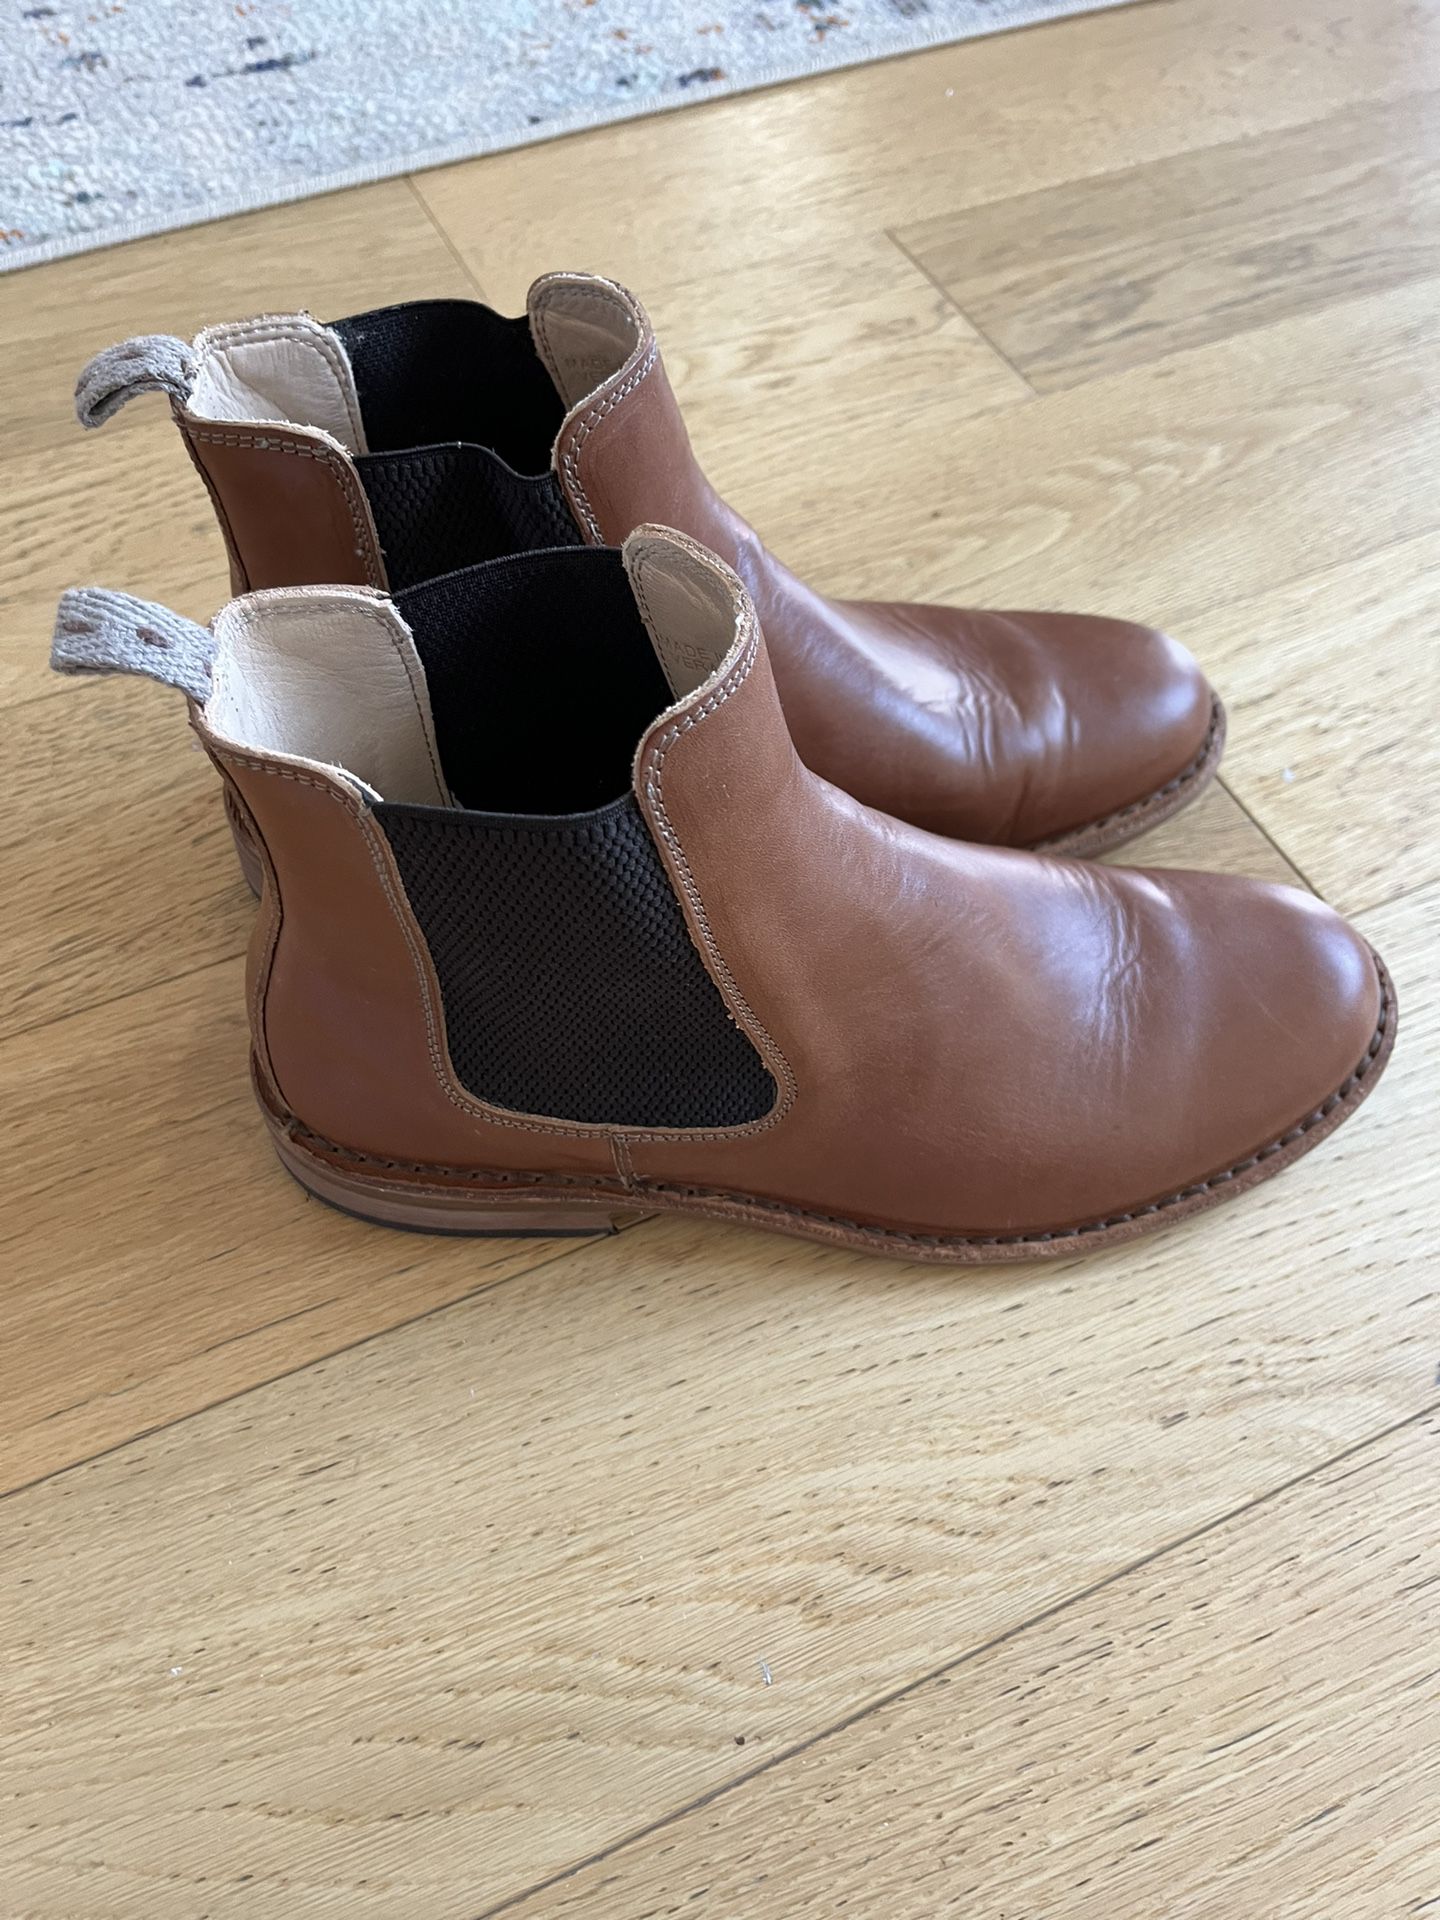 Astorflex Bitflex Chelsea Boots Size 9 Men’s Shoes